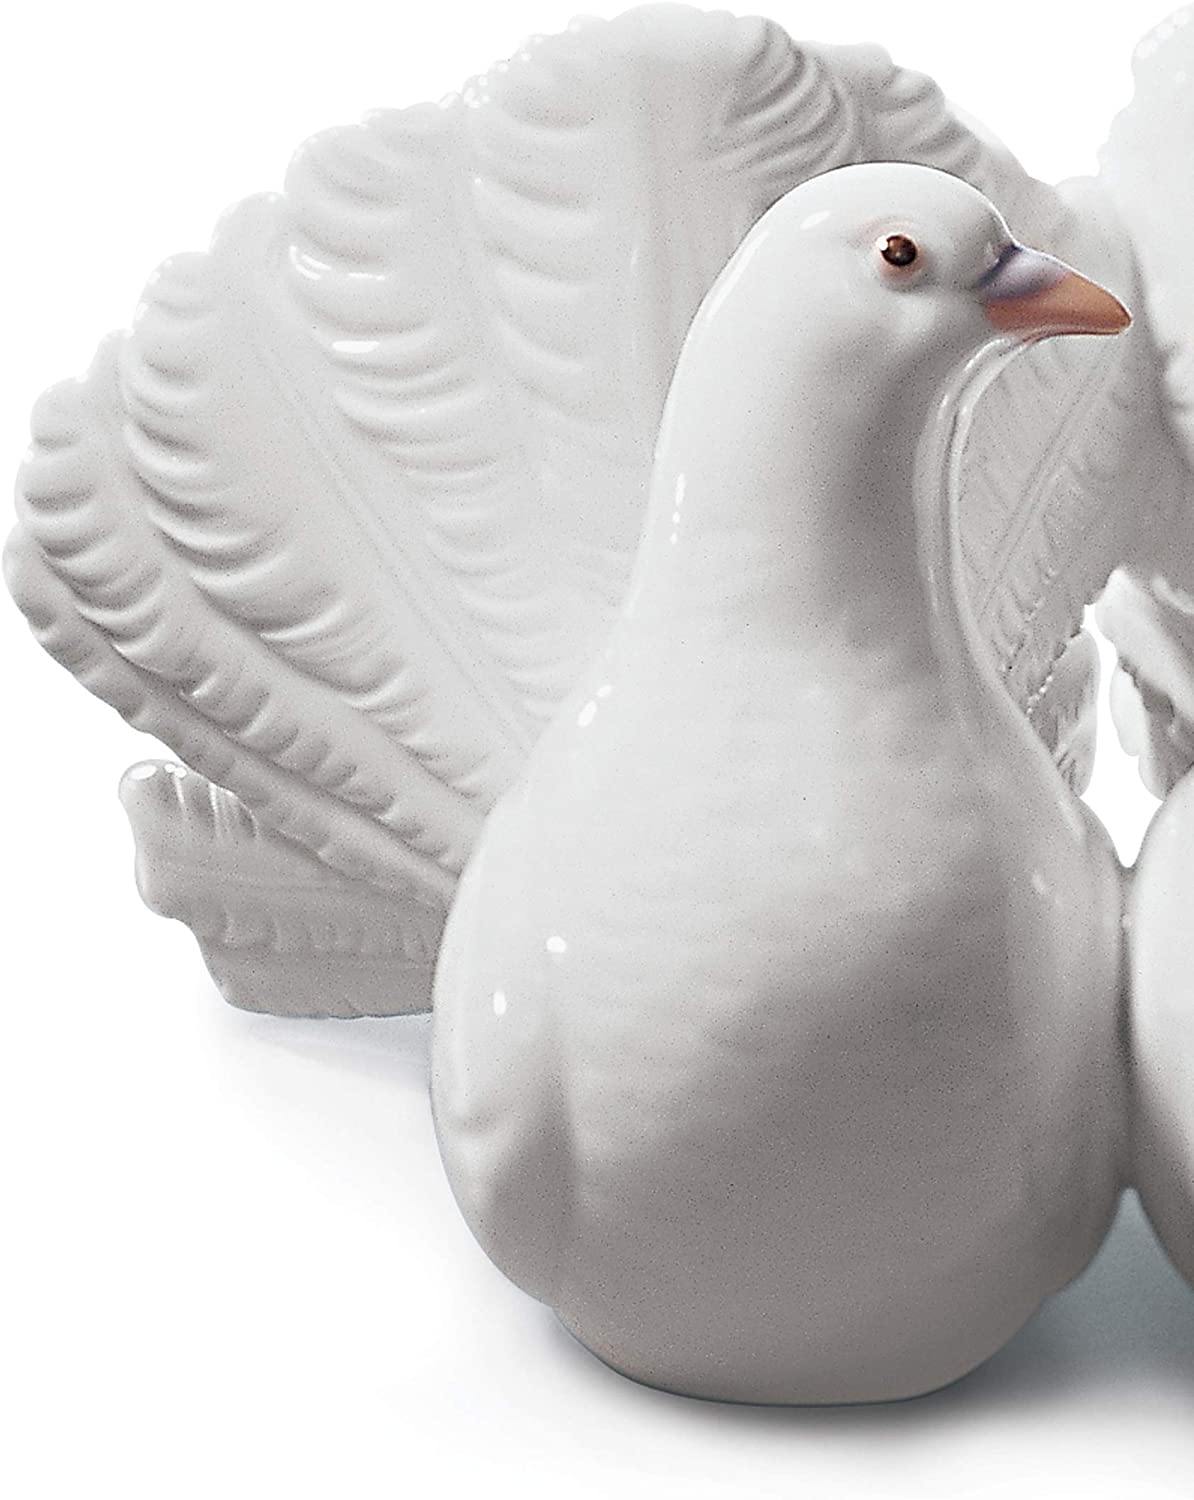 LLADRÓ Couple of Doves Figurine. Porcelain Doves Figure.